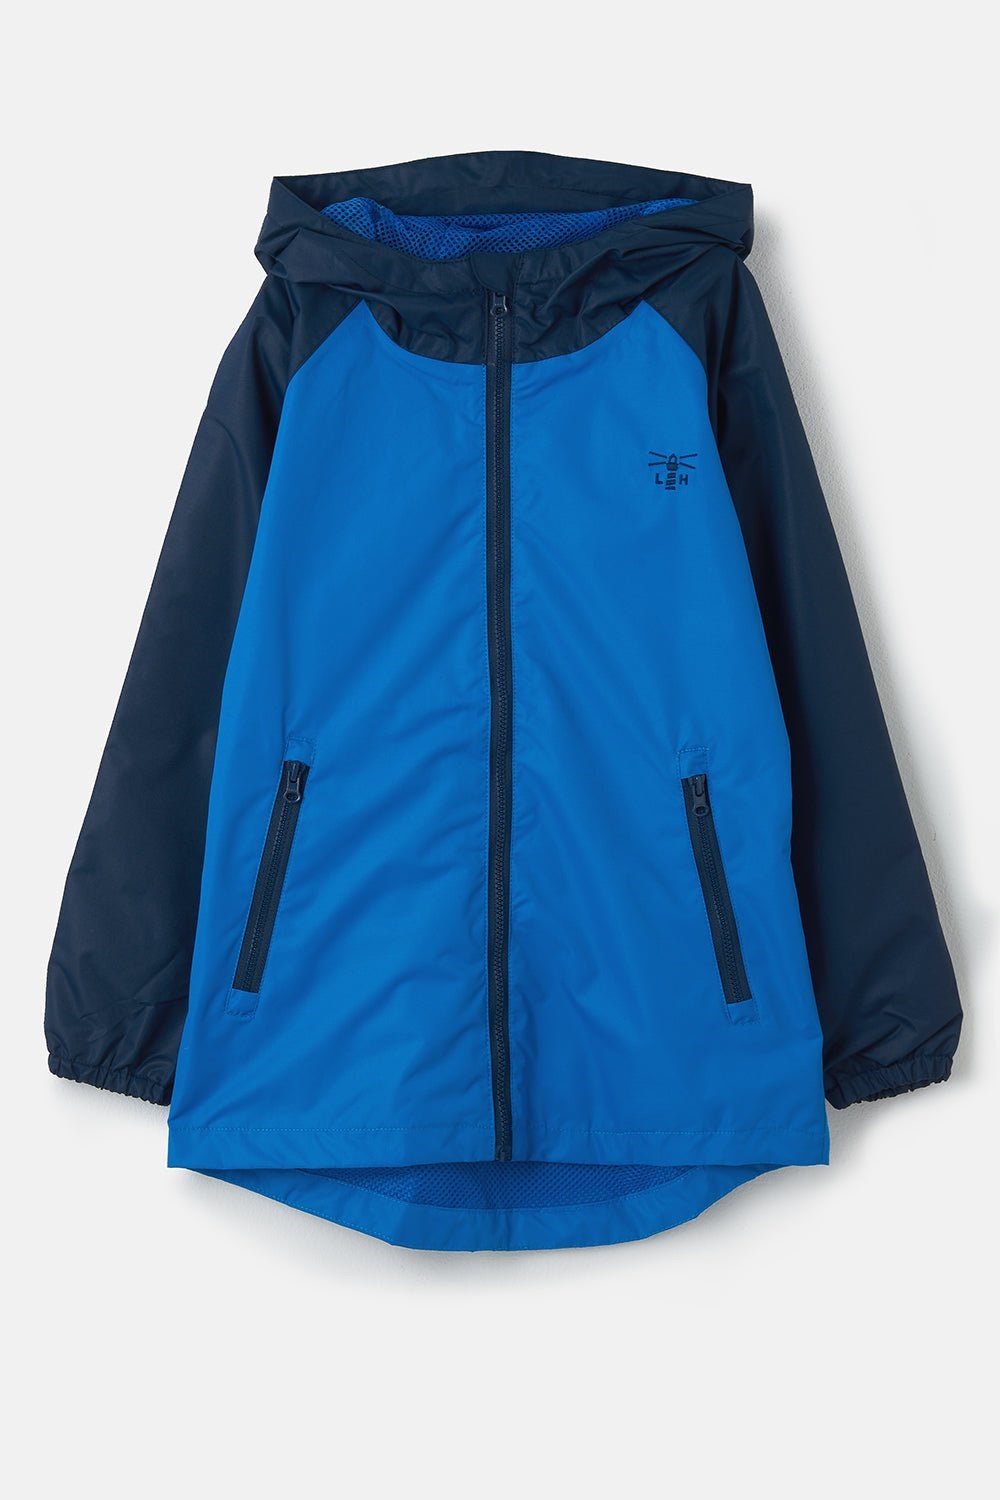 Caleb Kids Waterproof Jacket -